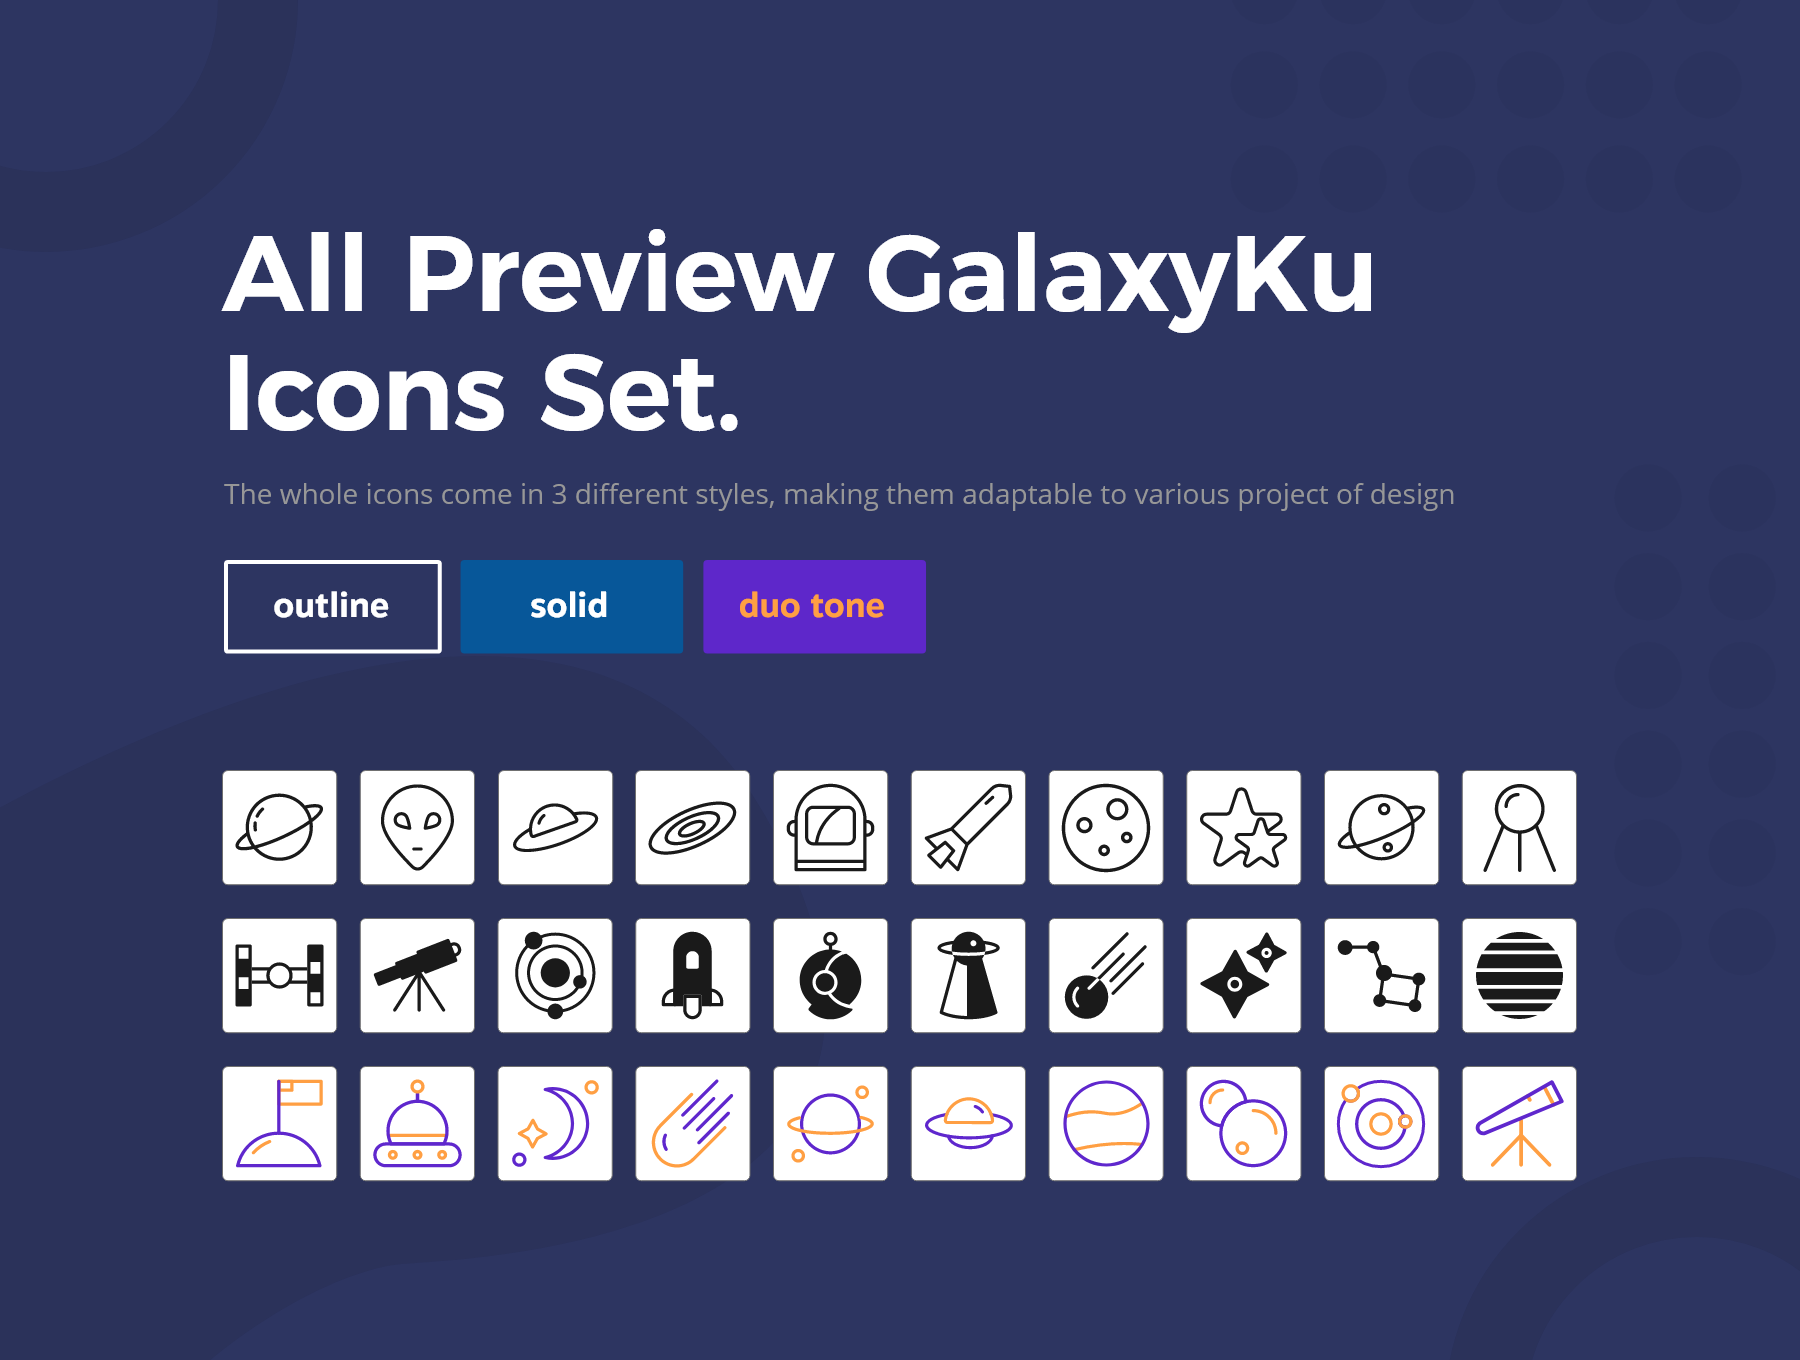 航天宇宙相关图标素材GalaxyKu Space Icons